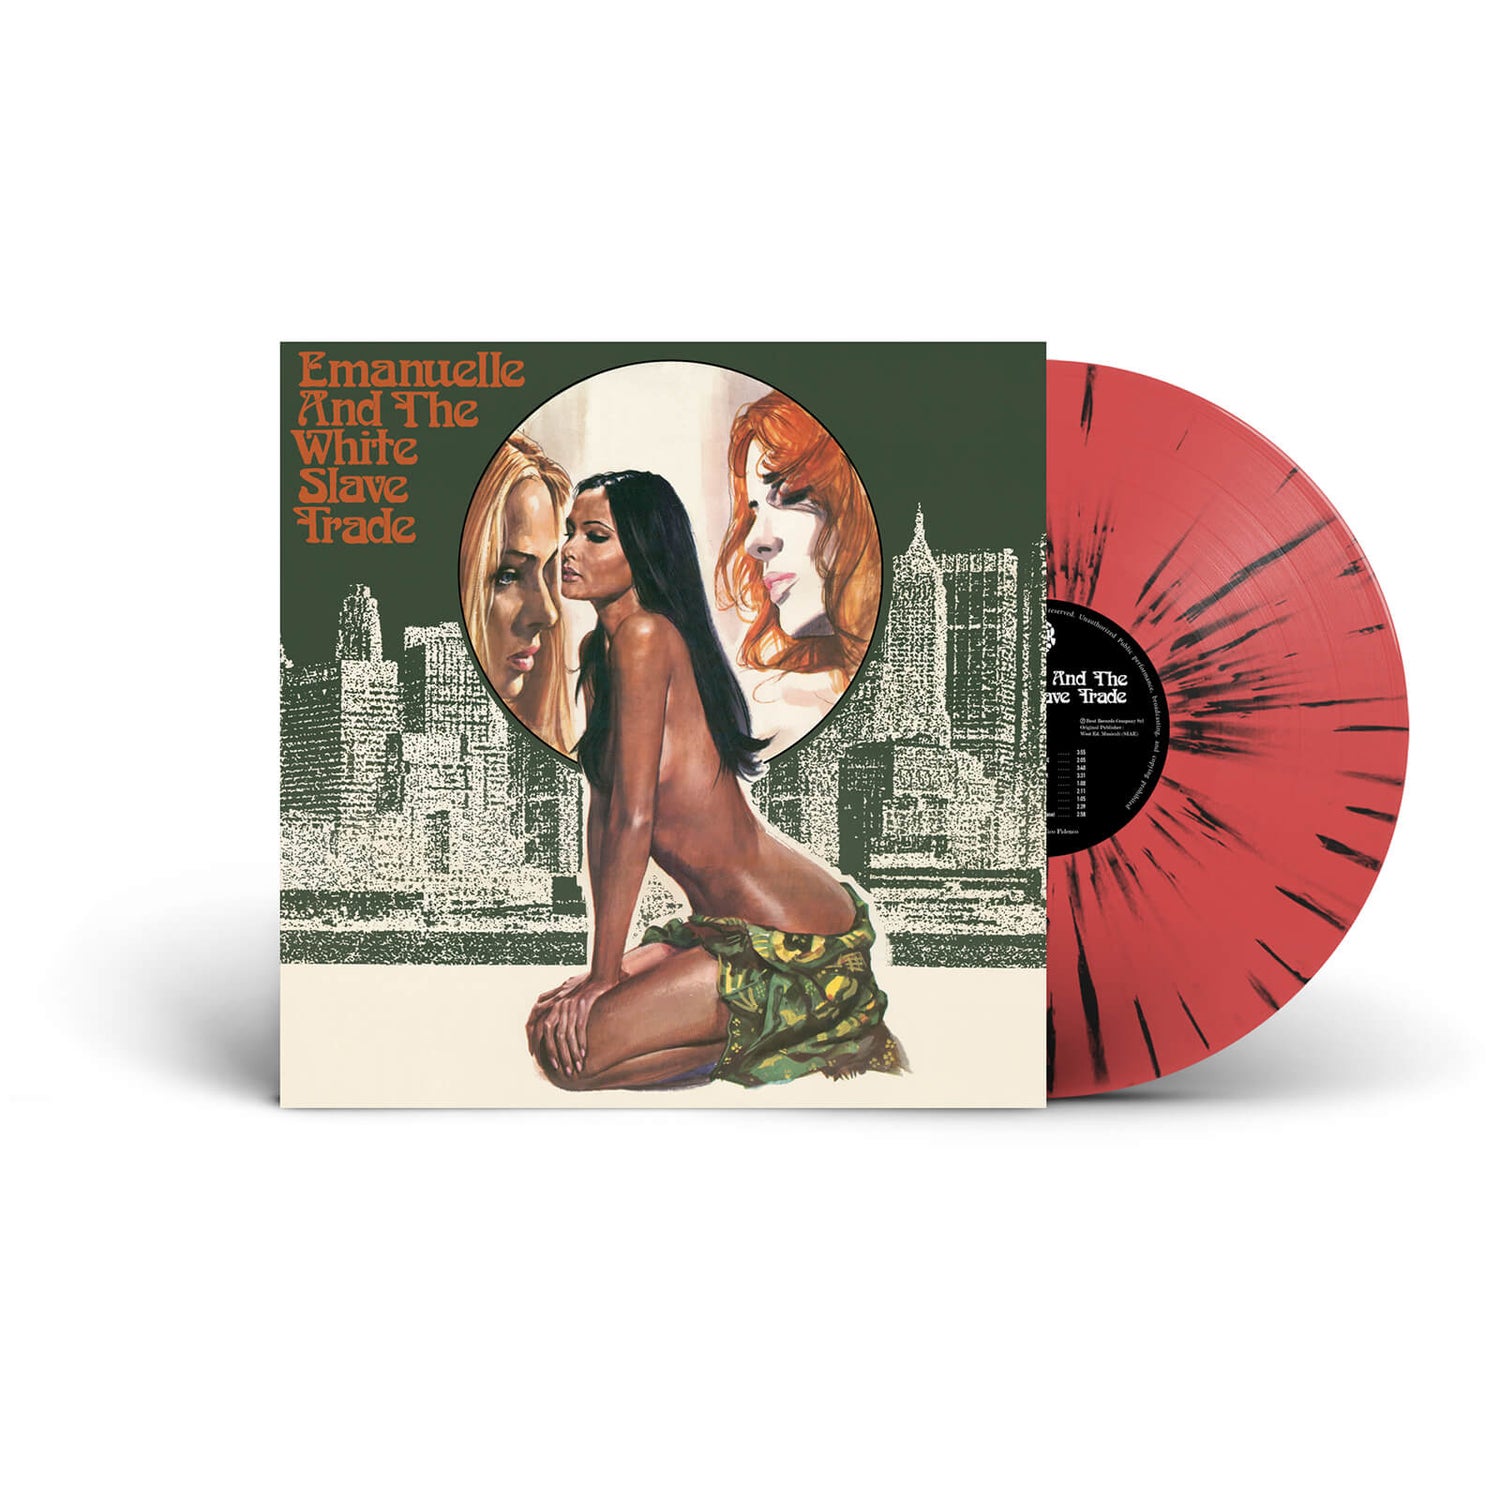 Emanuelle and the White Slave Trade (Original Soundtrack) Vinyl (Transparent Red with Black Splatter)